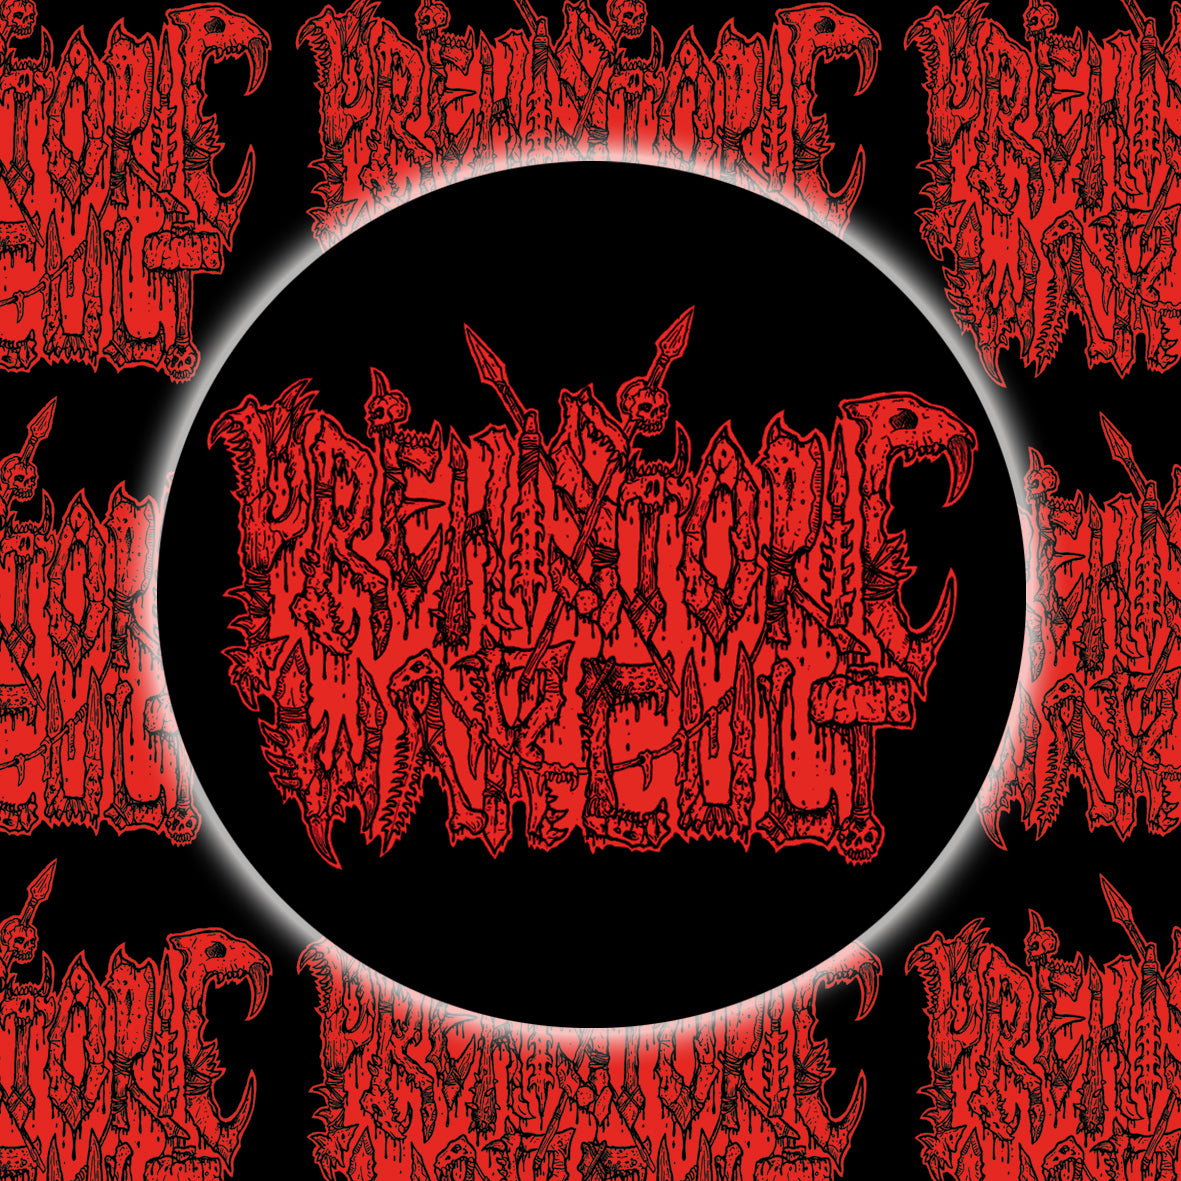 Prehistoric War Cult - Logo #1 Button